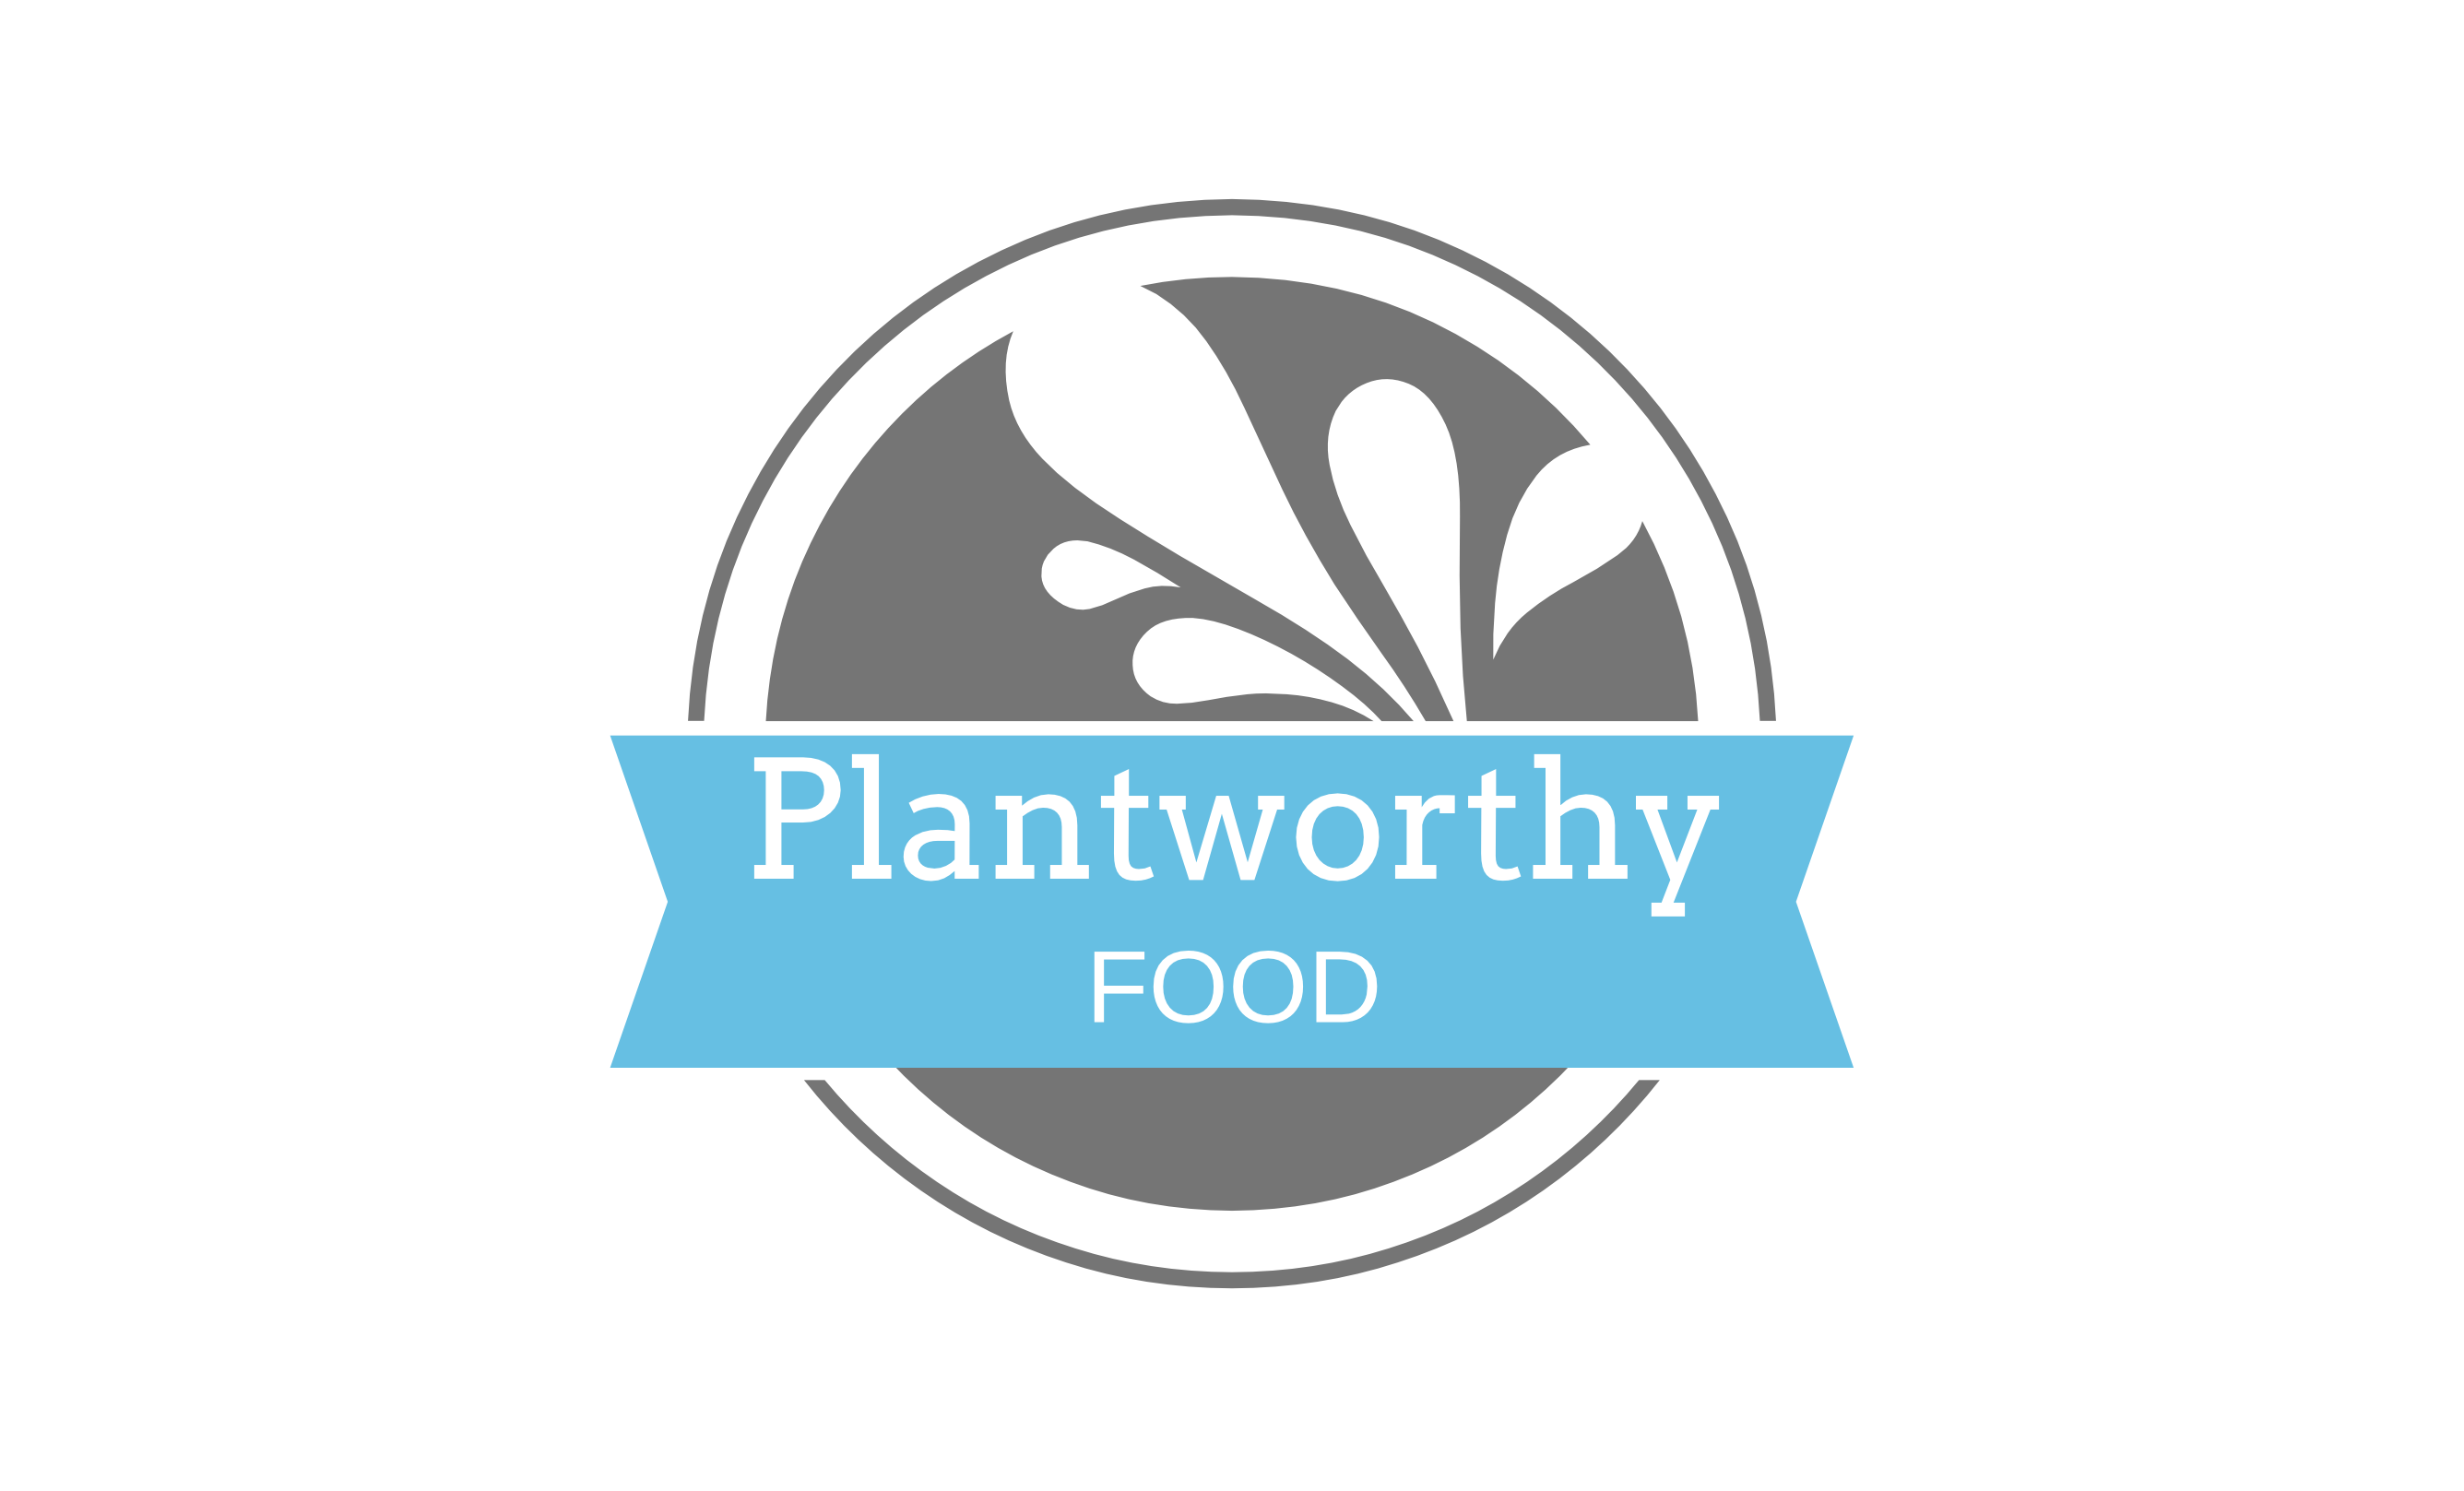 Plantworthy Food